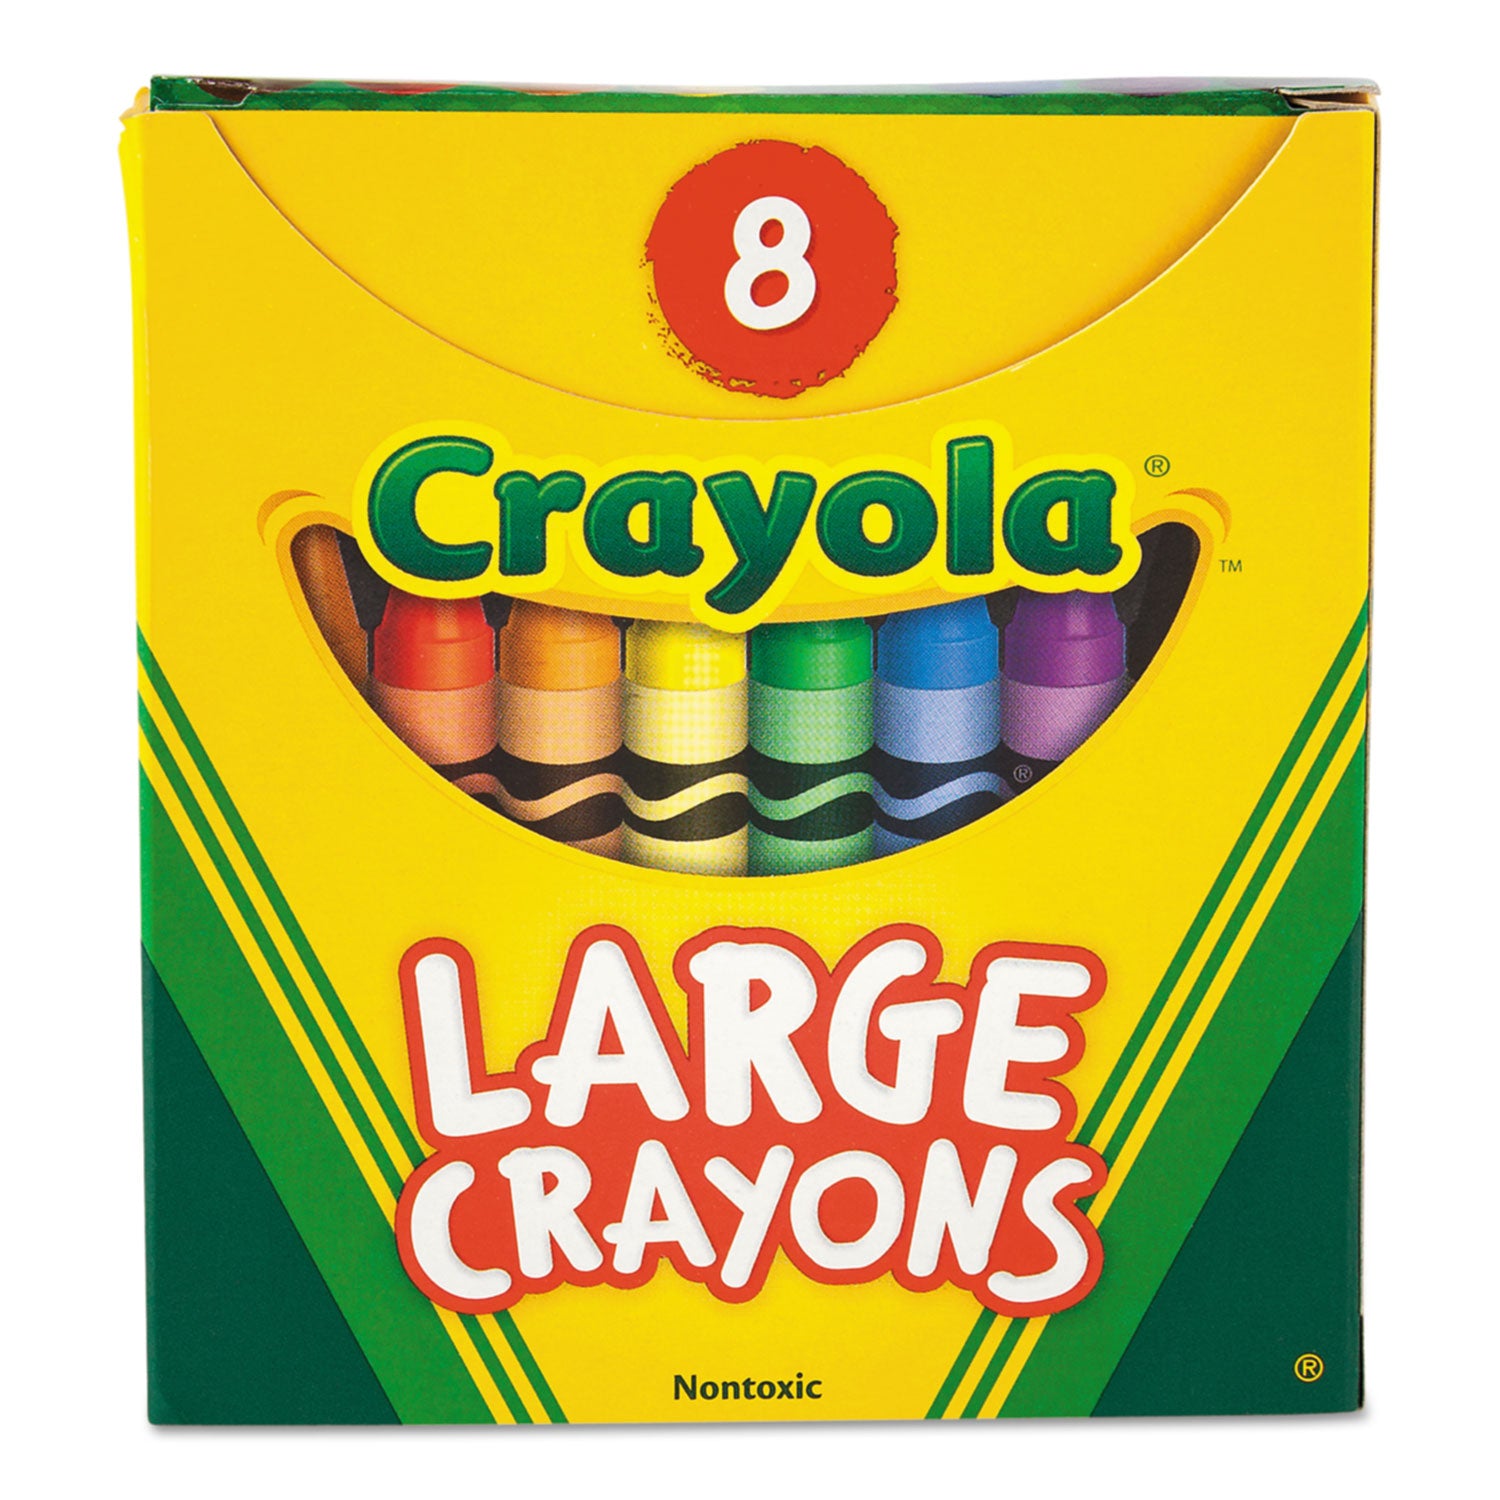 Large Crayons, Tuck Box, 8 Colors/Box - 